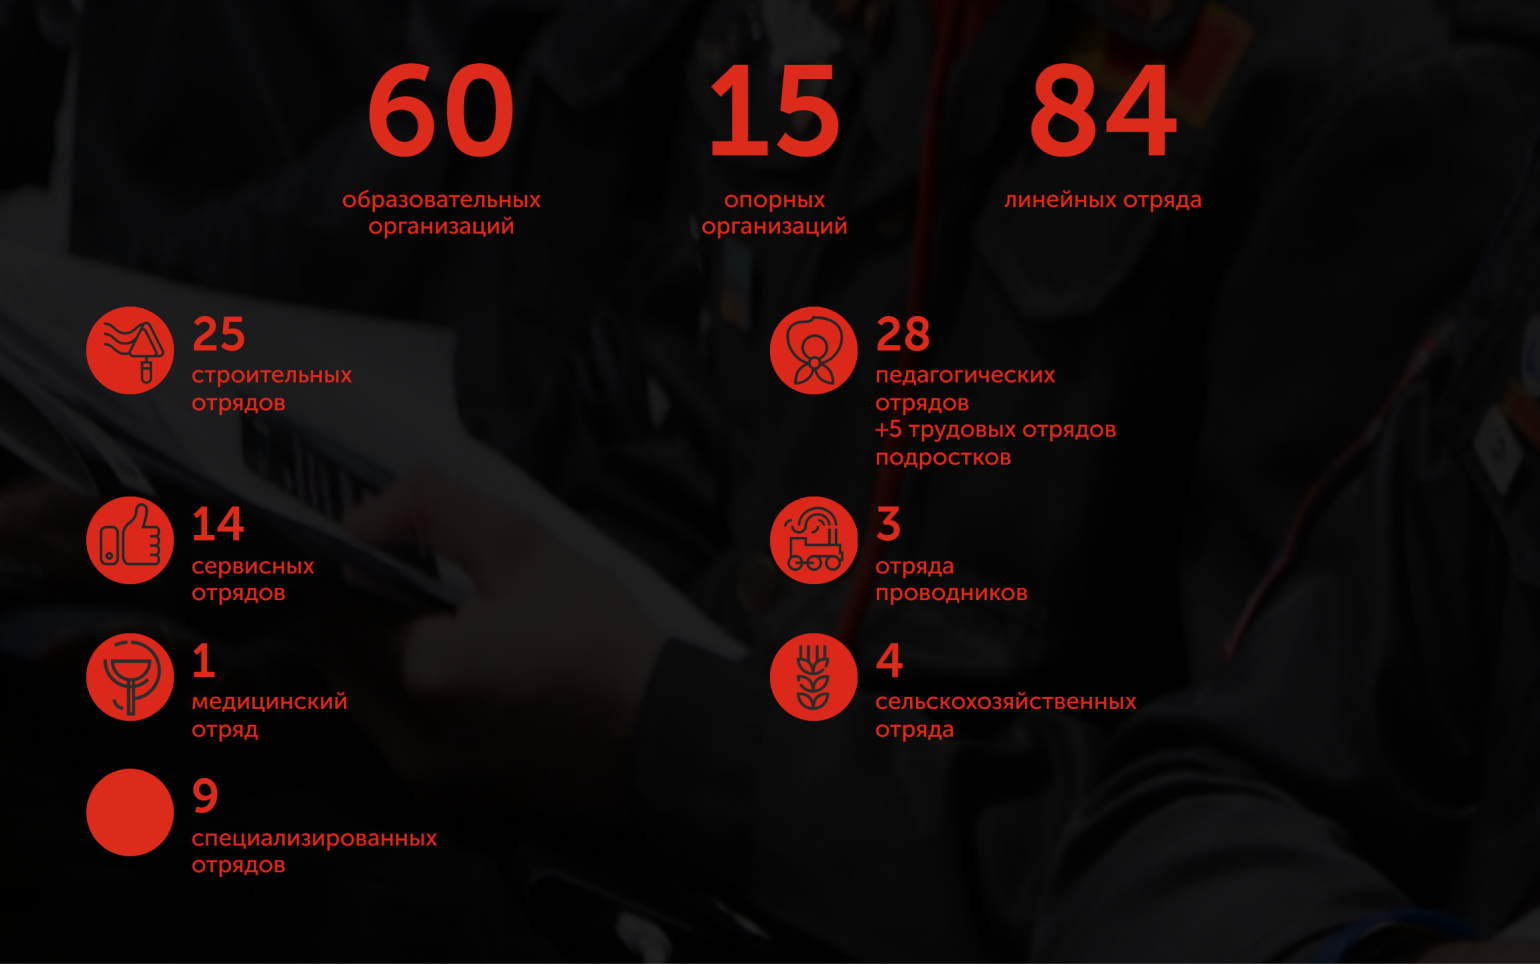 Структура студенческих отрядов Москвы. Источник: mosrso.ru